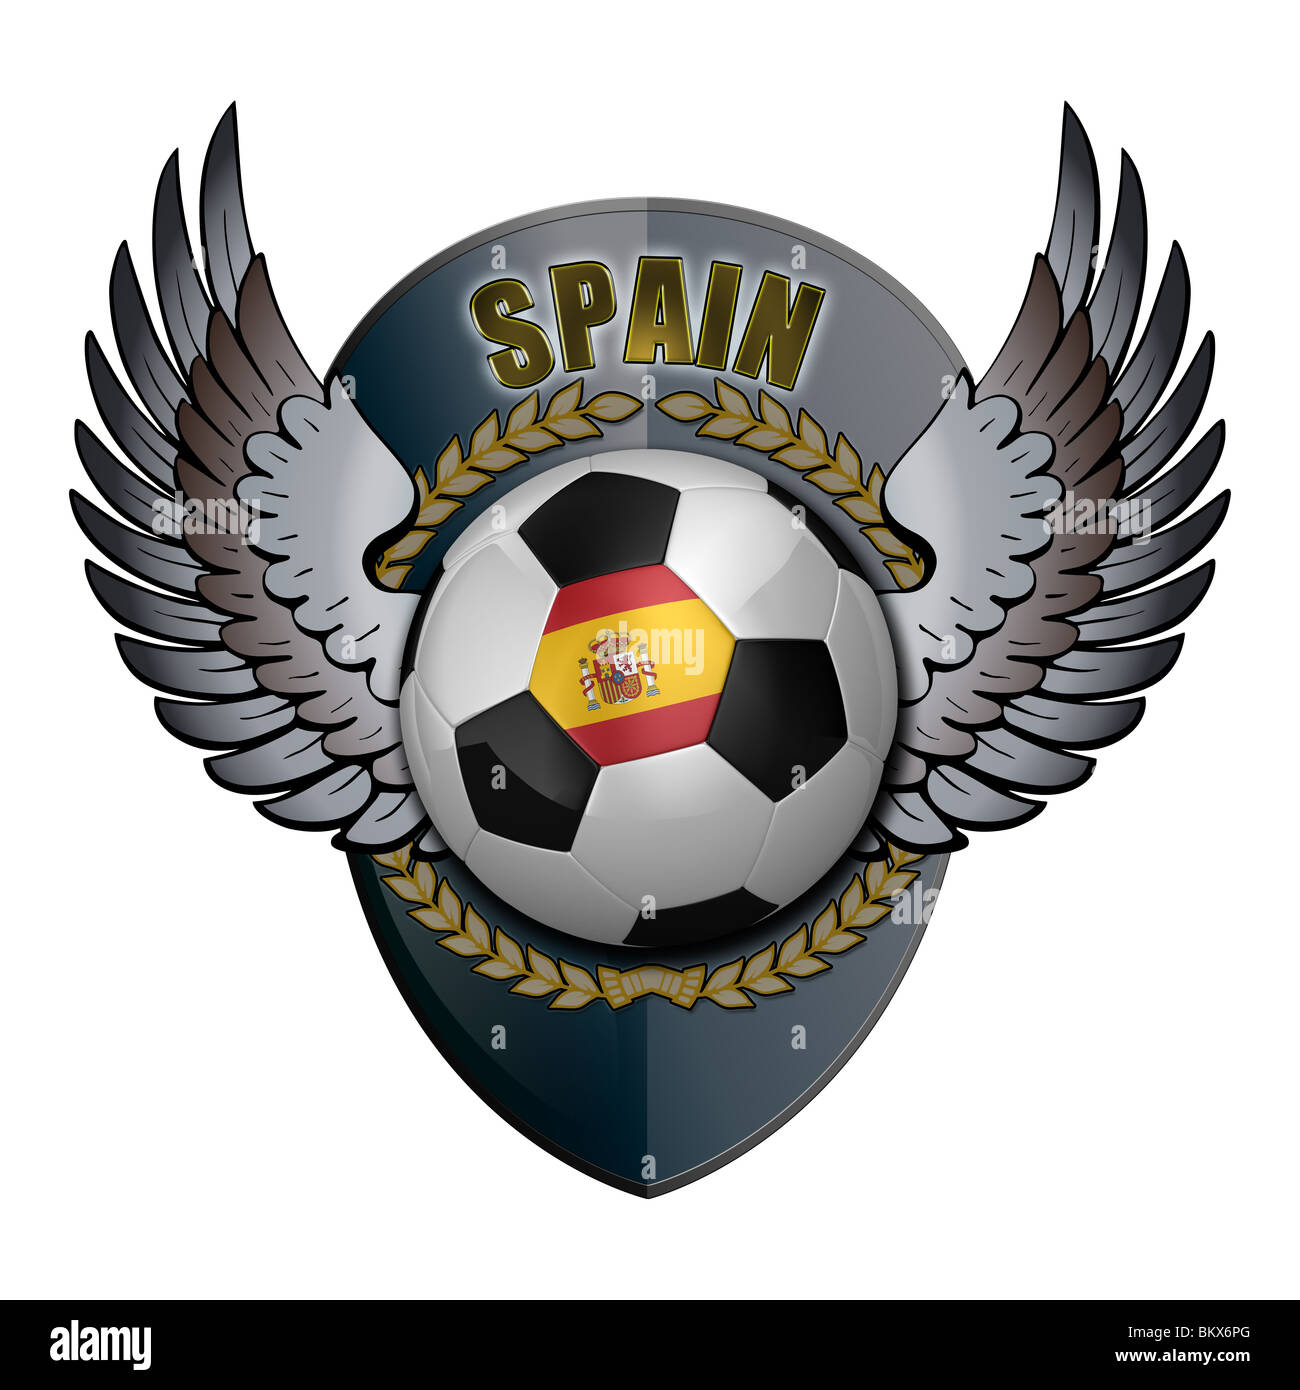 Spanische Fußball mit Wappen Stockfotografie - Alamy